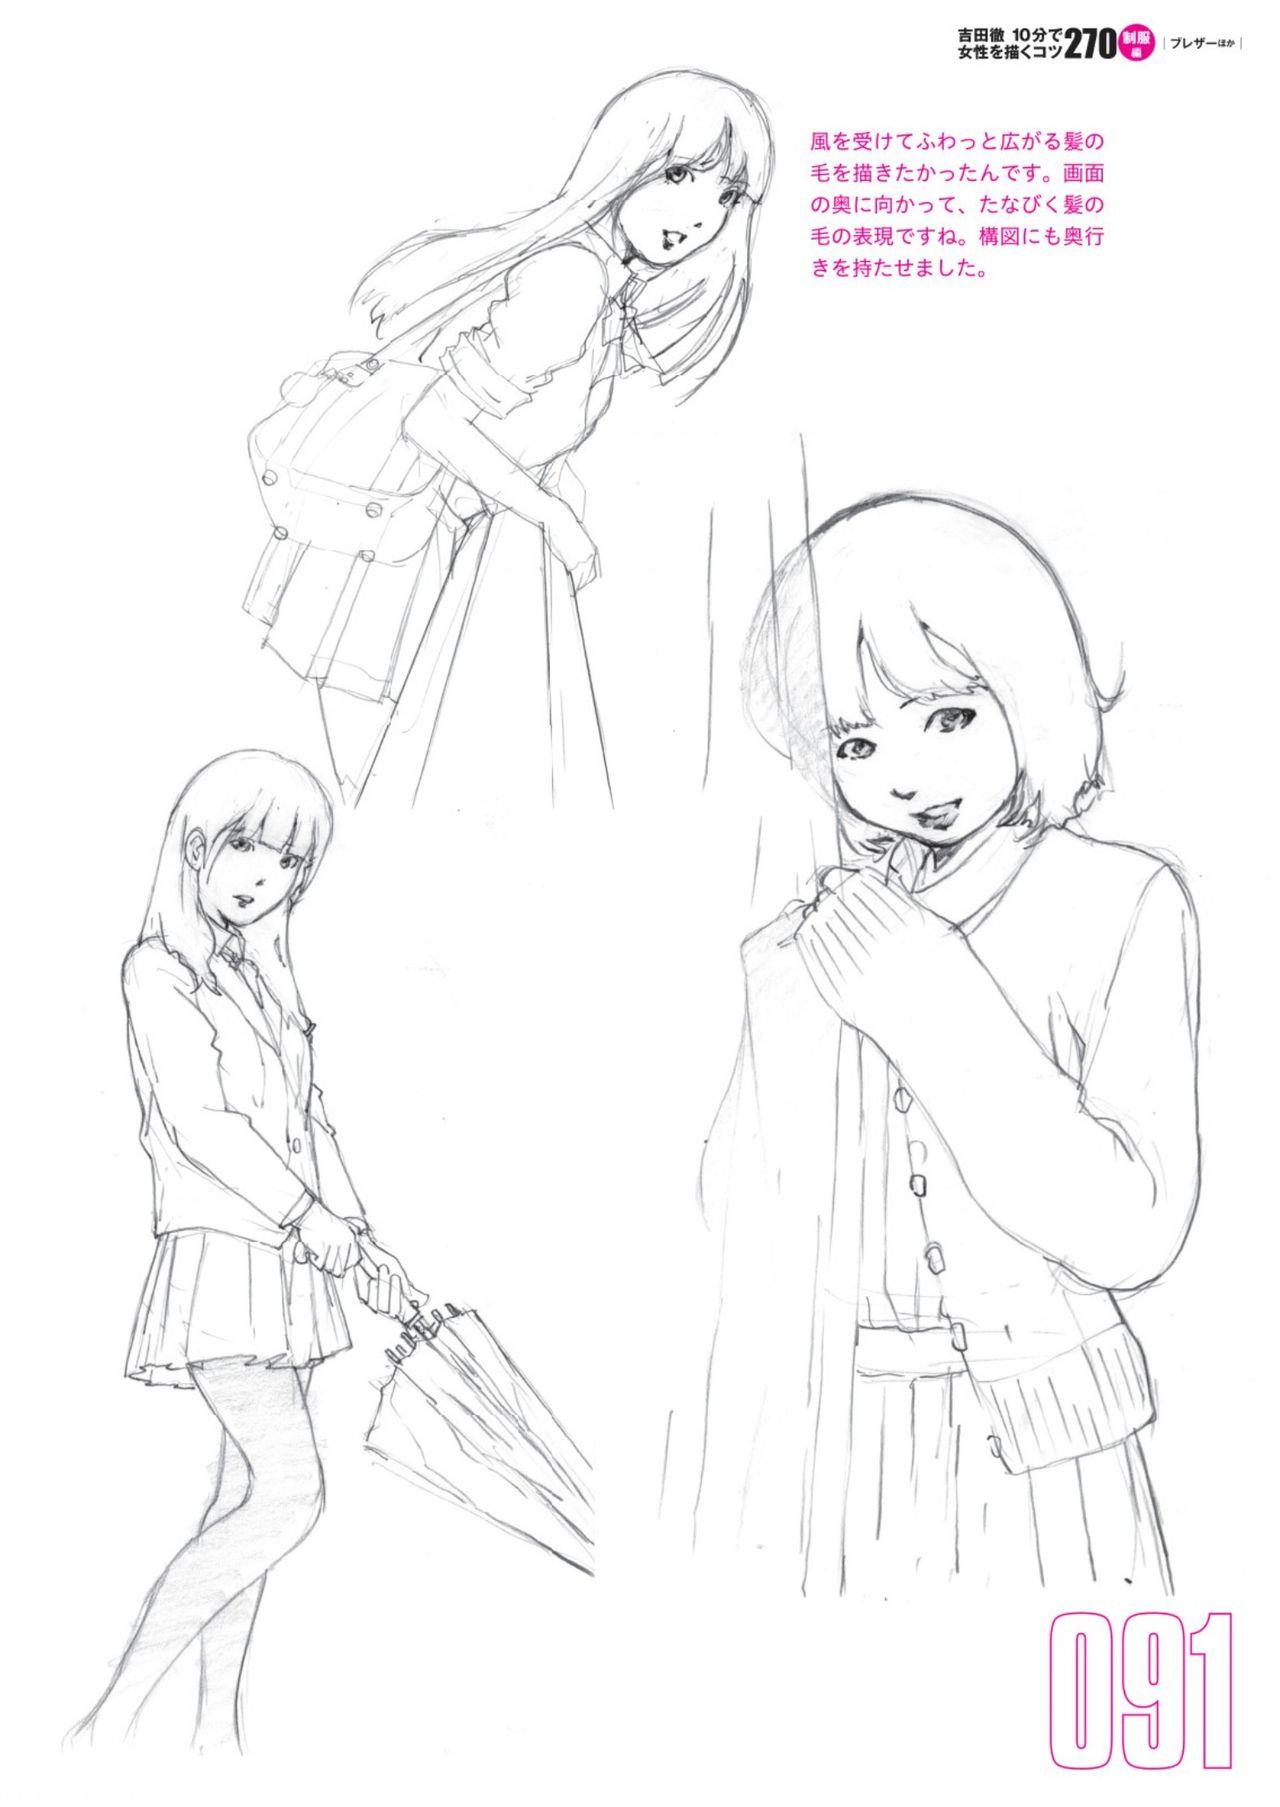 Toru Yoshida Tips for drawing women in 10 minutes 270 Uniforms 92